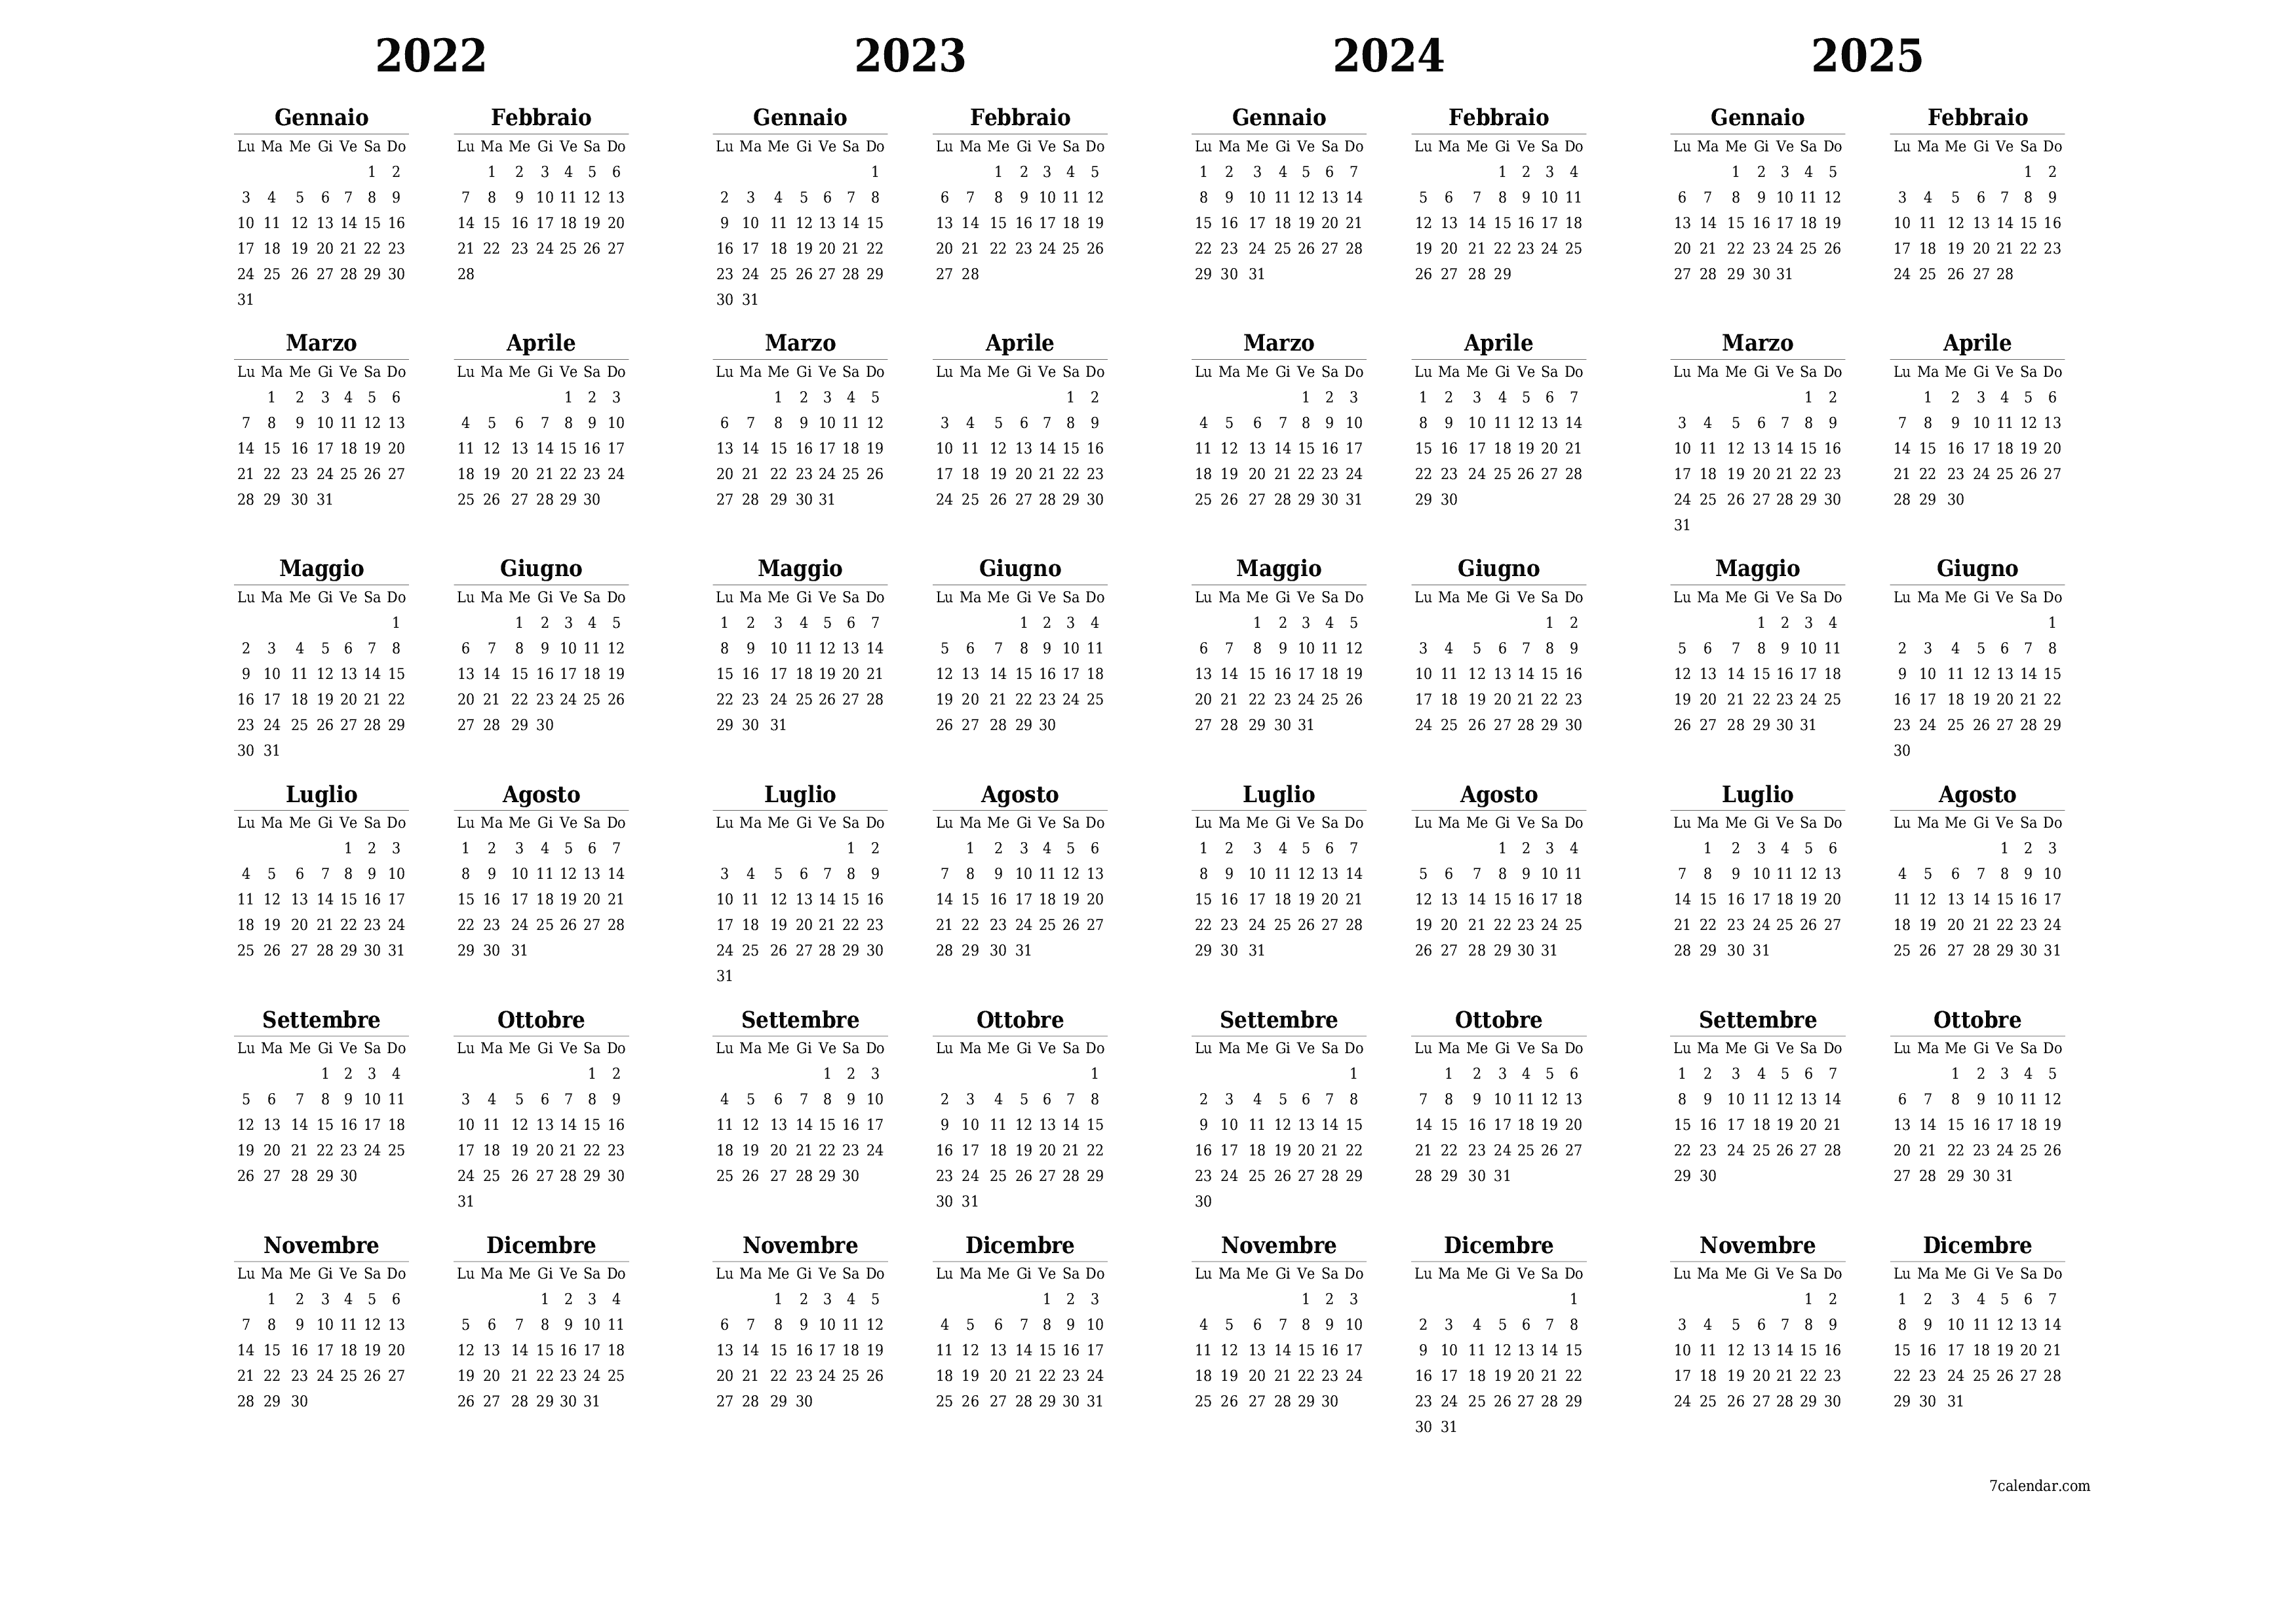  stampabile da parete modello di gratuitoorizzontale Annuale calendario Settembre (Set) 2022